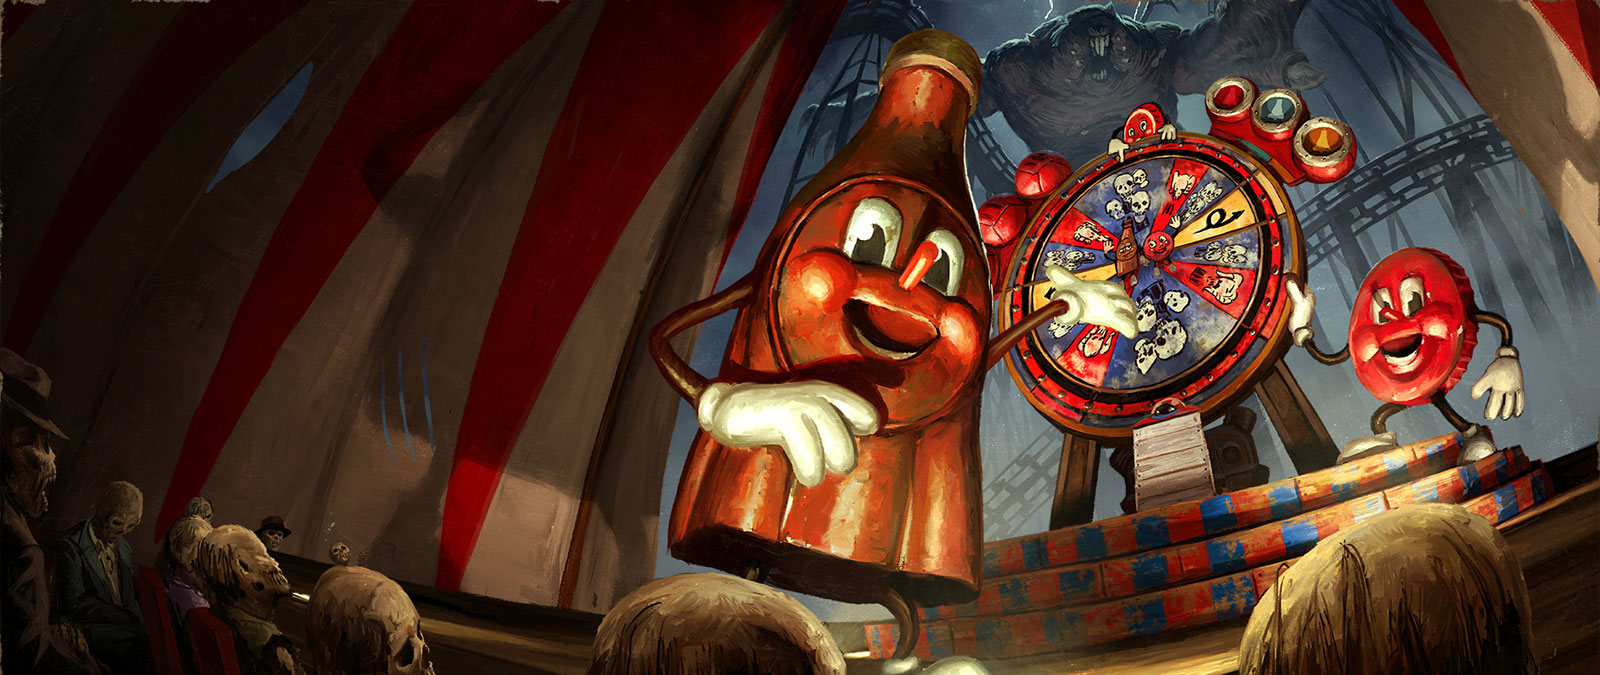 Dentro de una carpa de circo, dos mascotas de Nuka Cola presentan una ruleta sospechosa.